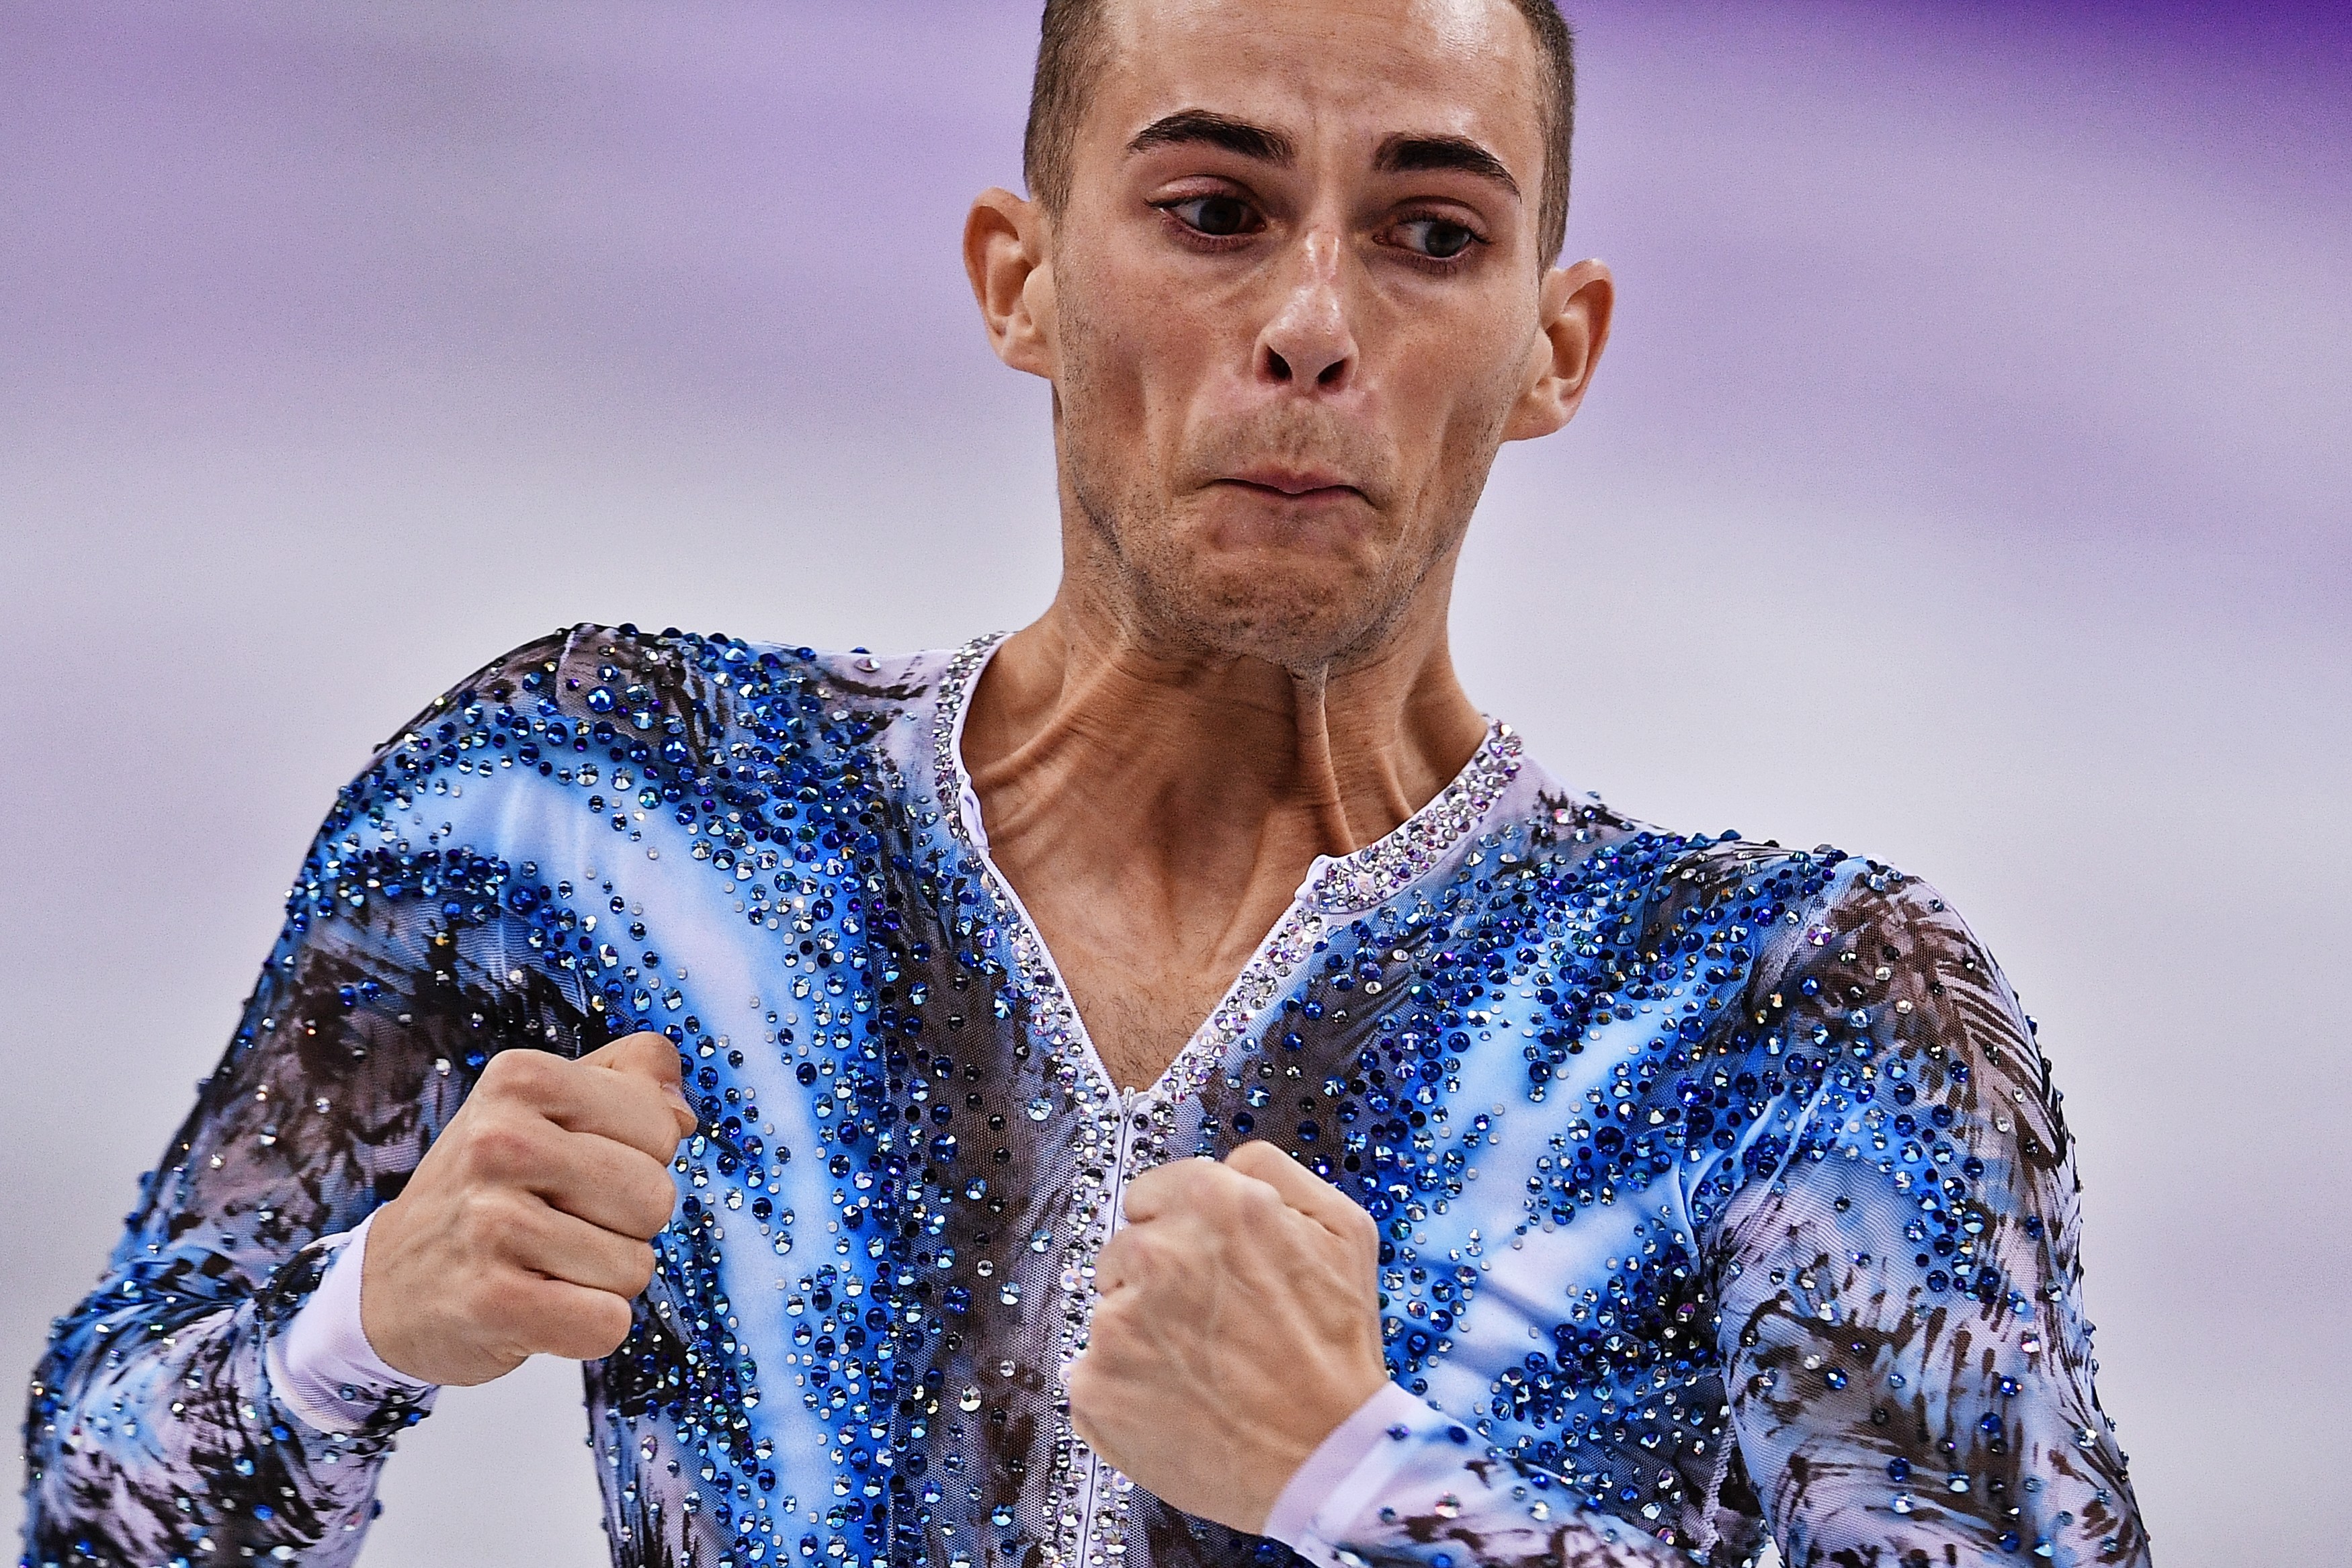 Адам Риппон (США) — бронзовый призёр ОИ-2018 в командном первенстве. Фото: РИА Новости/Владимир Песня